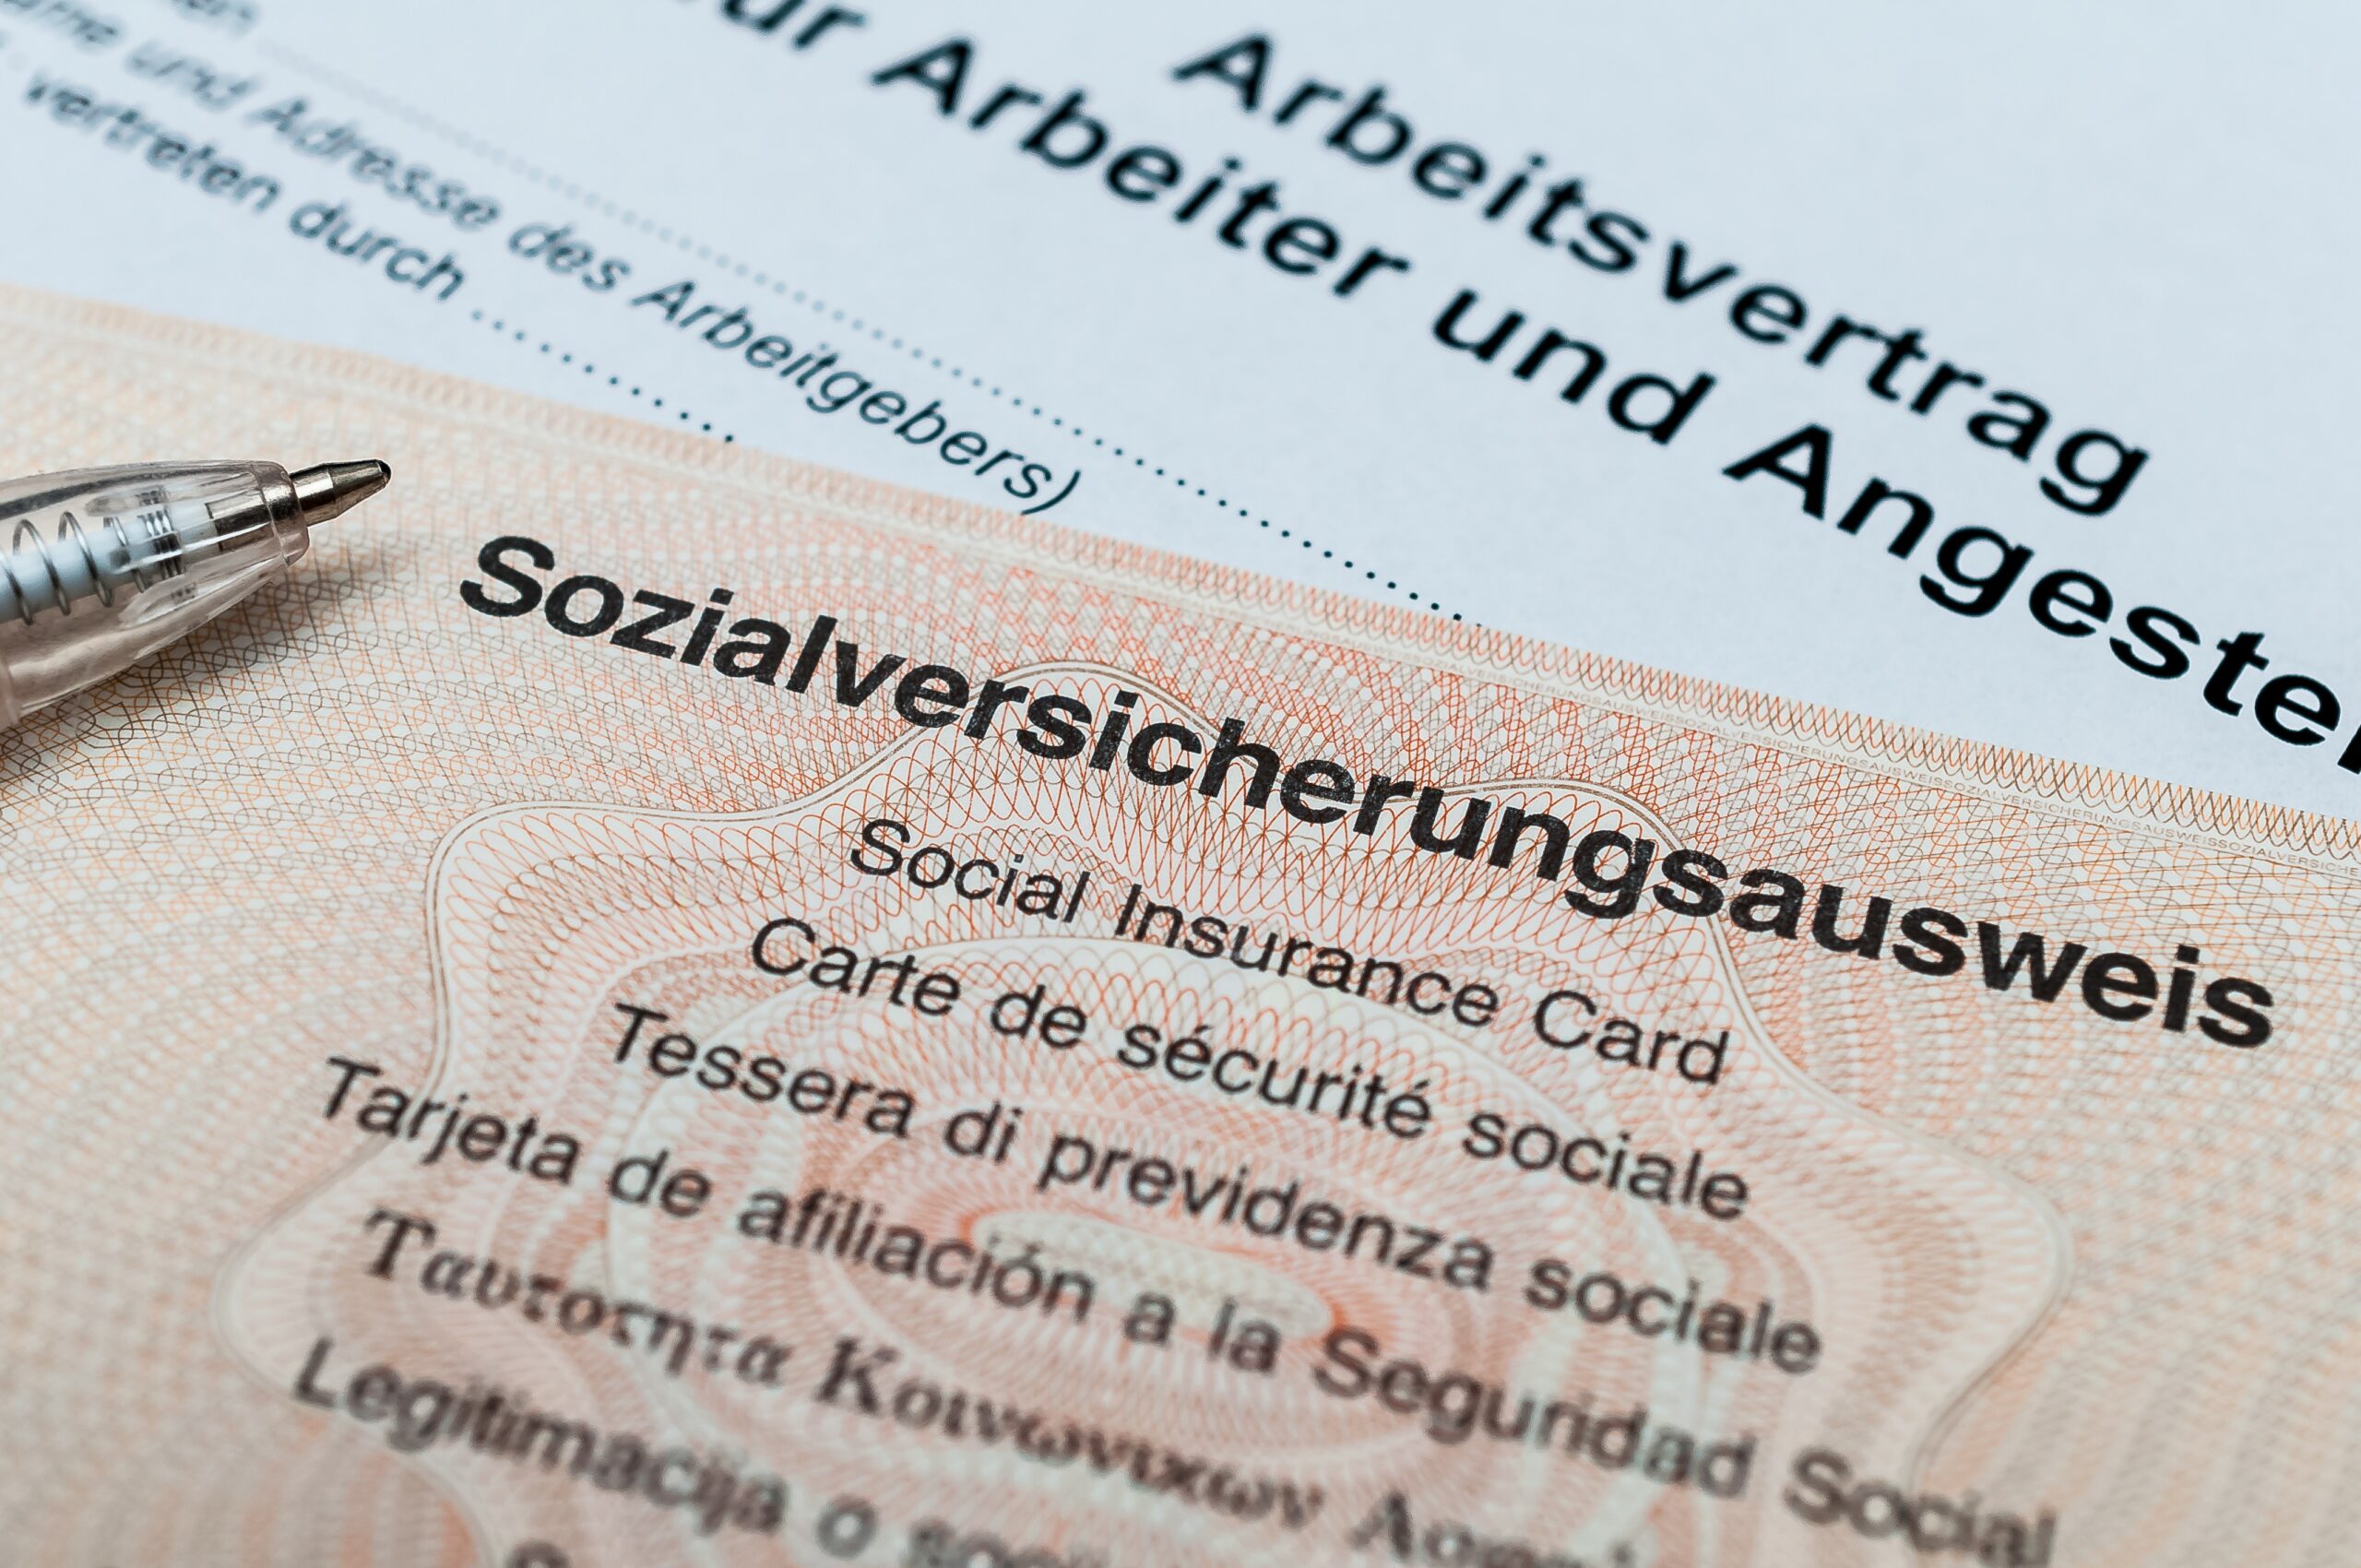 Sozialversicherungsausweis | Studyheads